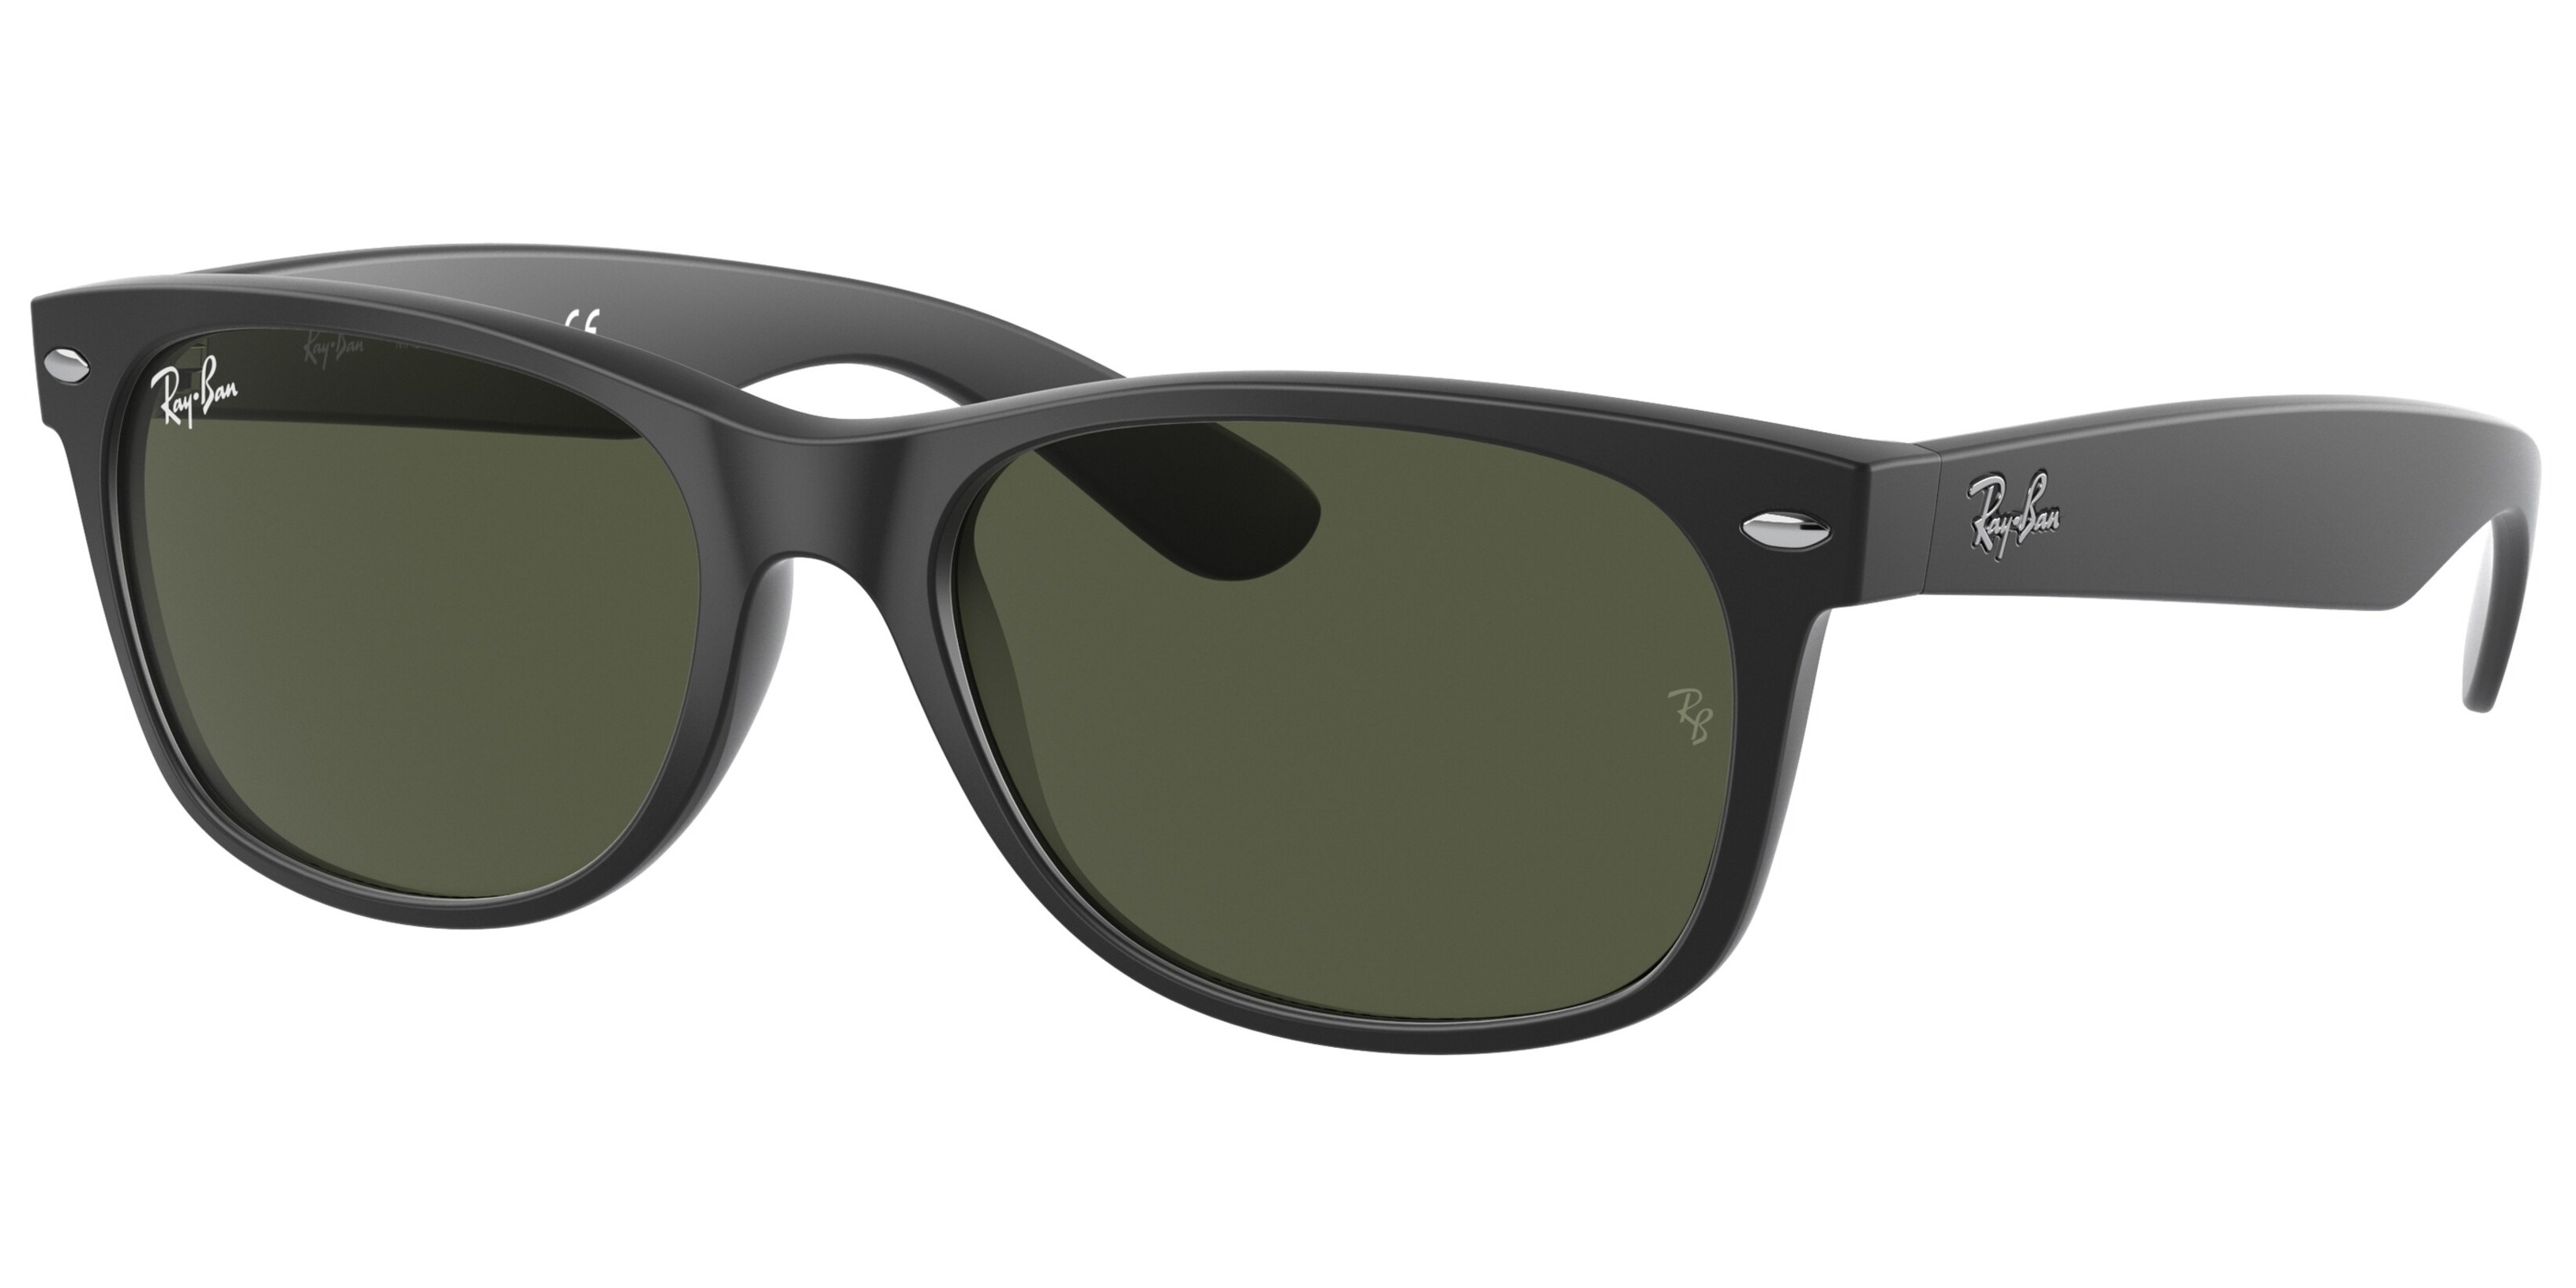 Sluneční brýle Ray-Ban® model 2132, barva obruby černá mat, čočka zelená, kód barevné varianty 622. 